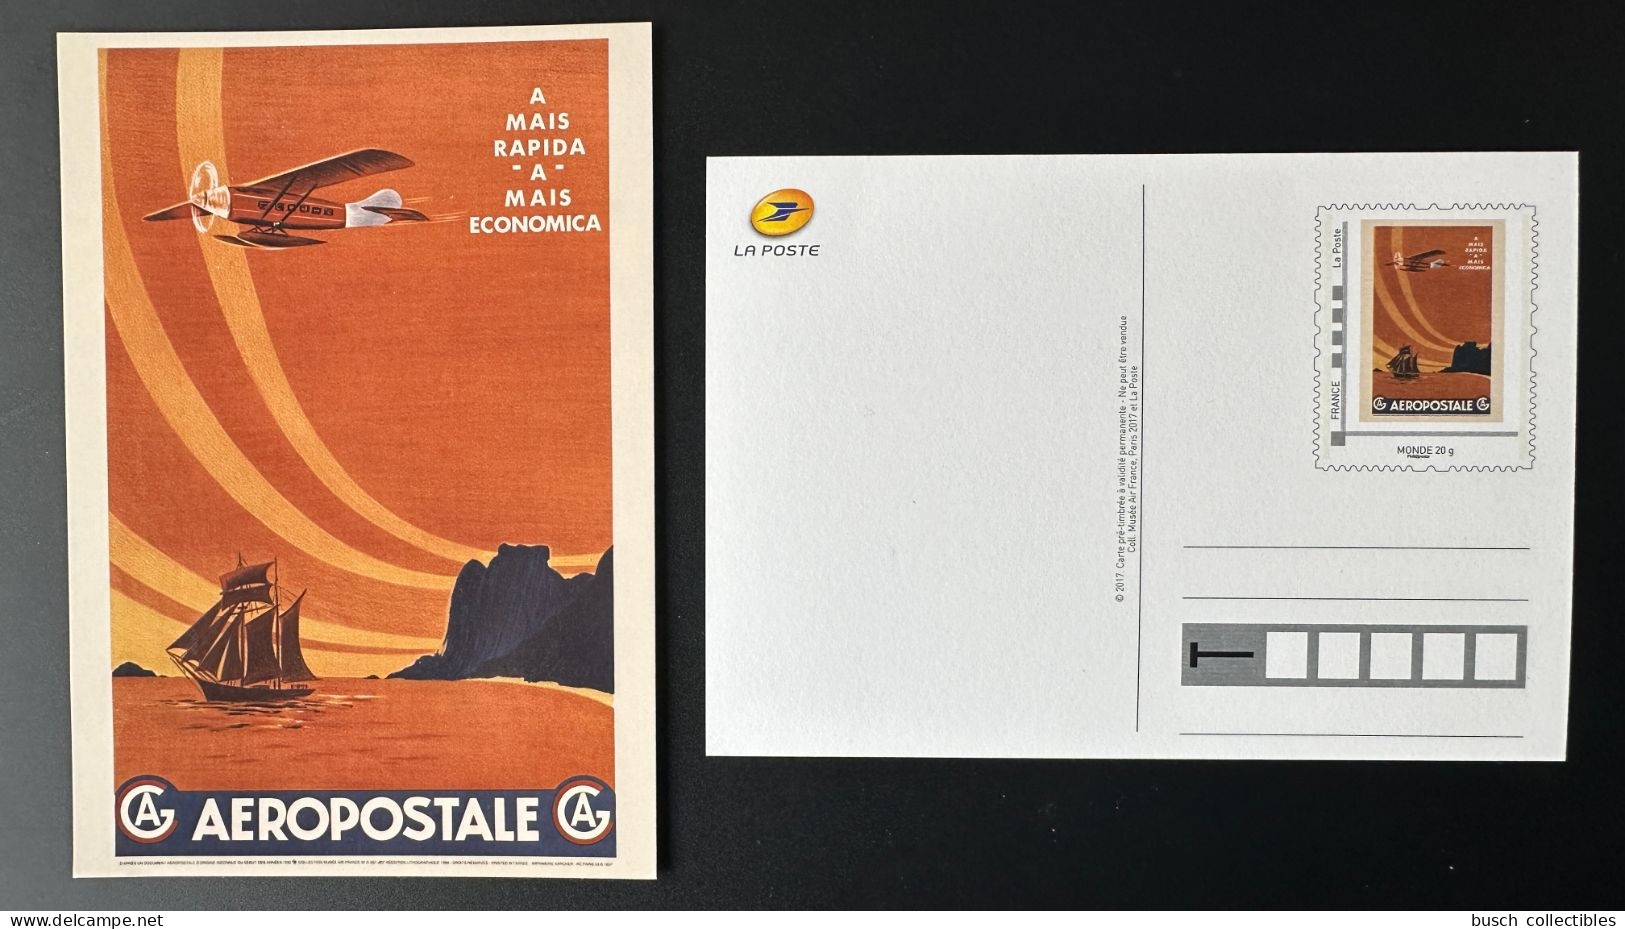 France 2017 Stationery Carte Postale Entier Ganzsache Aeropostale Musée Air France Economica Avion Airplane Flugzeug - Sonderganzsachen